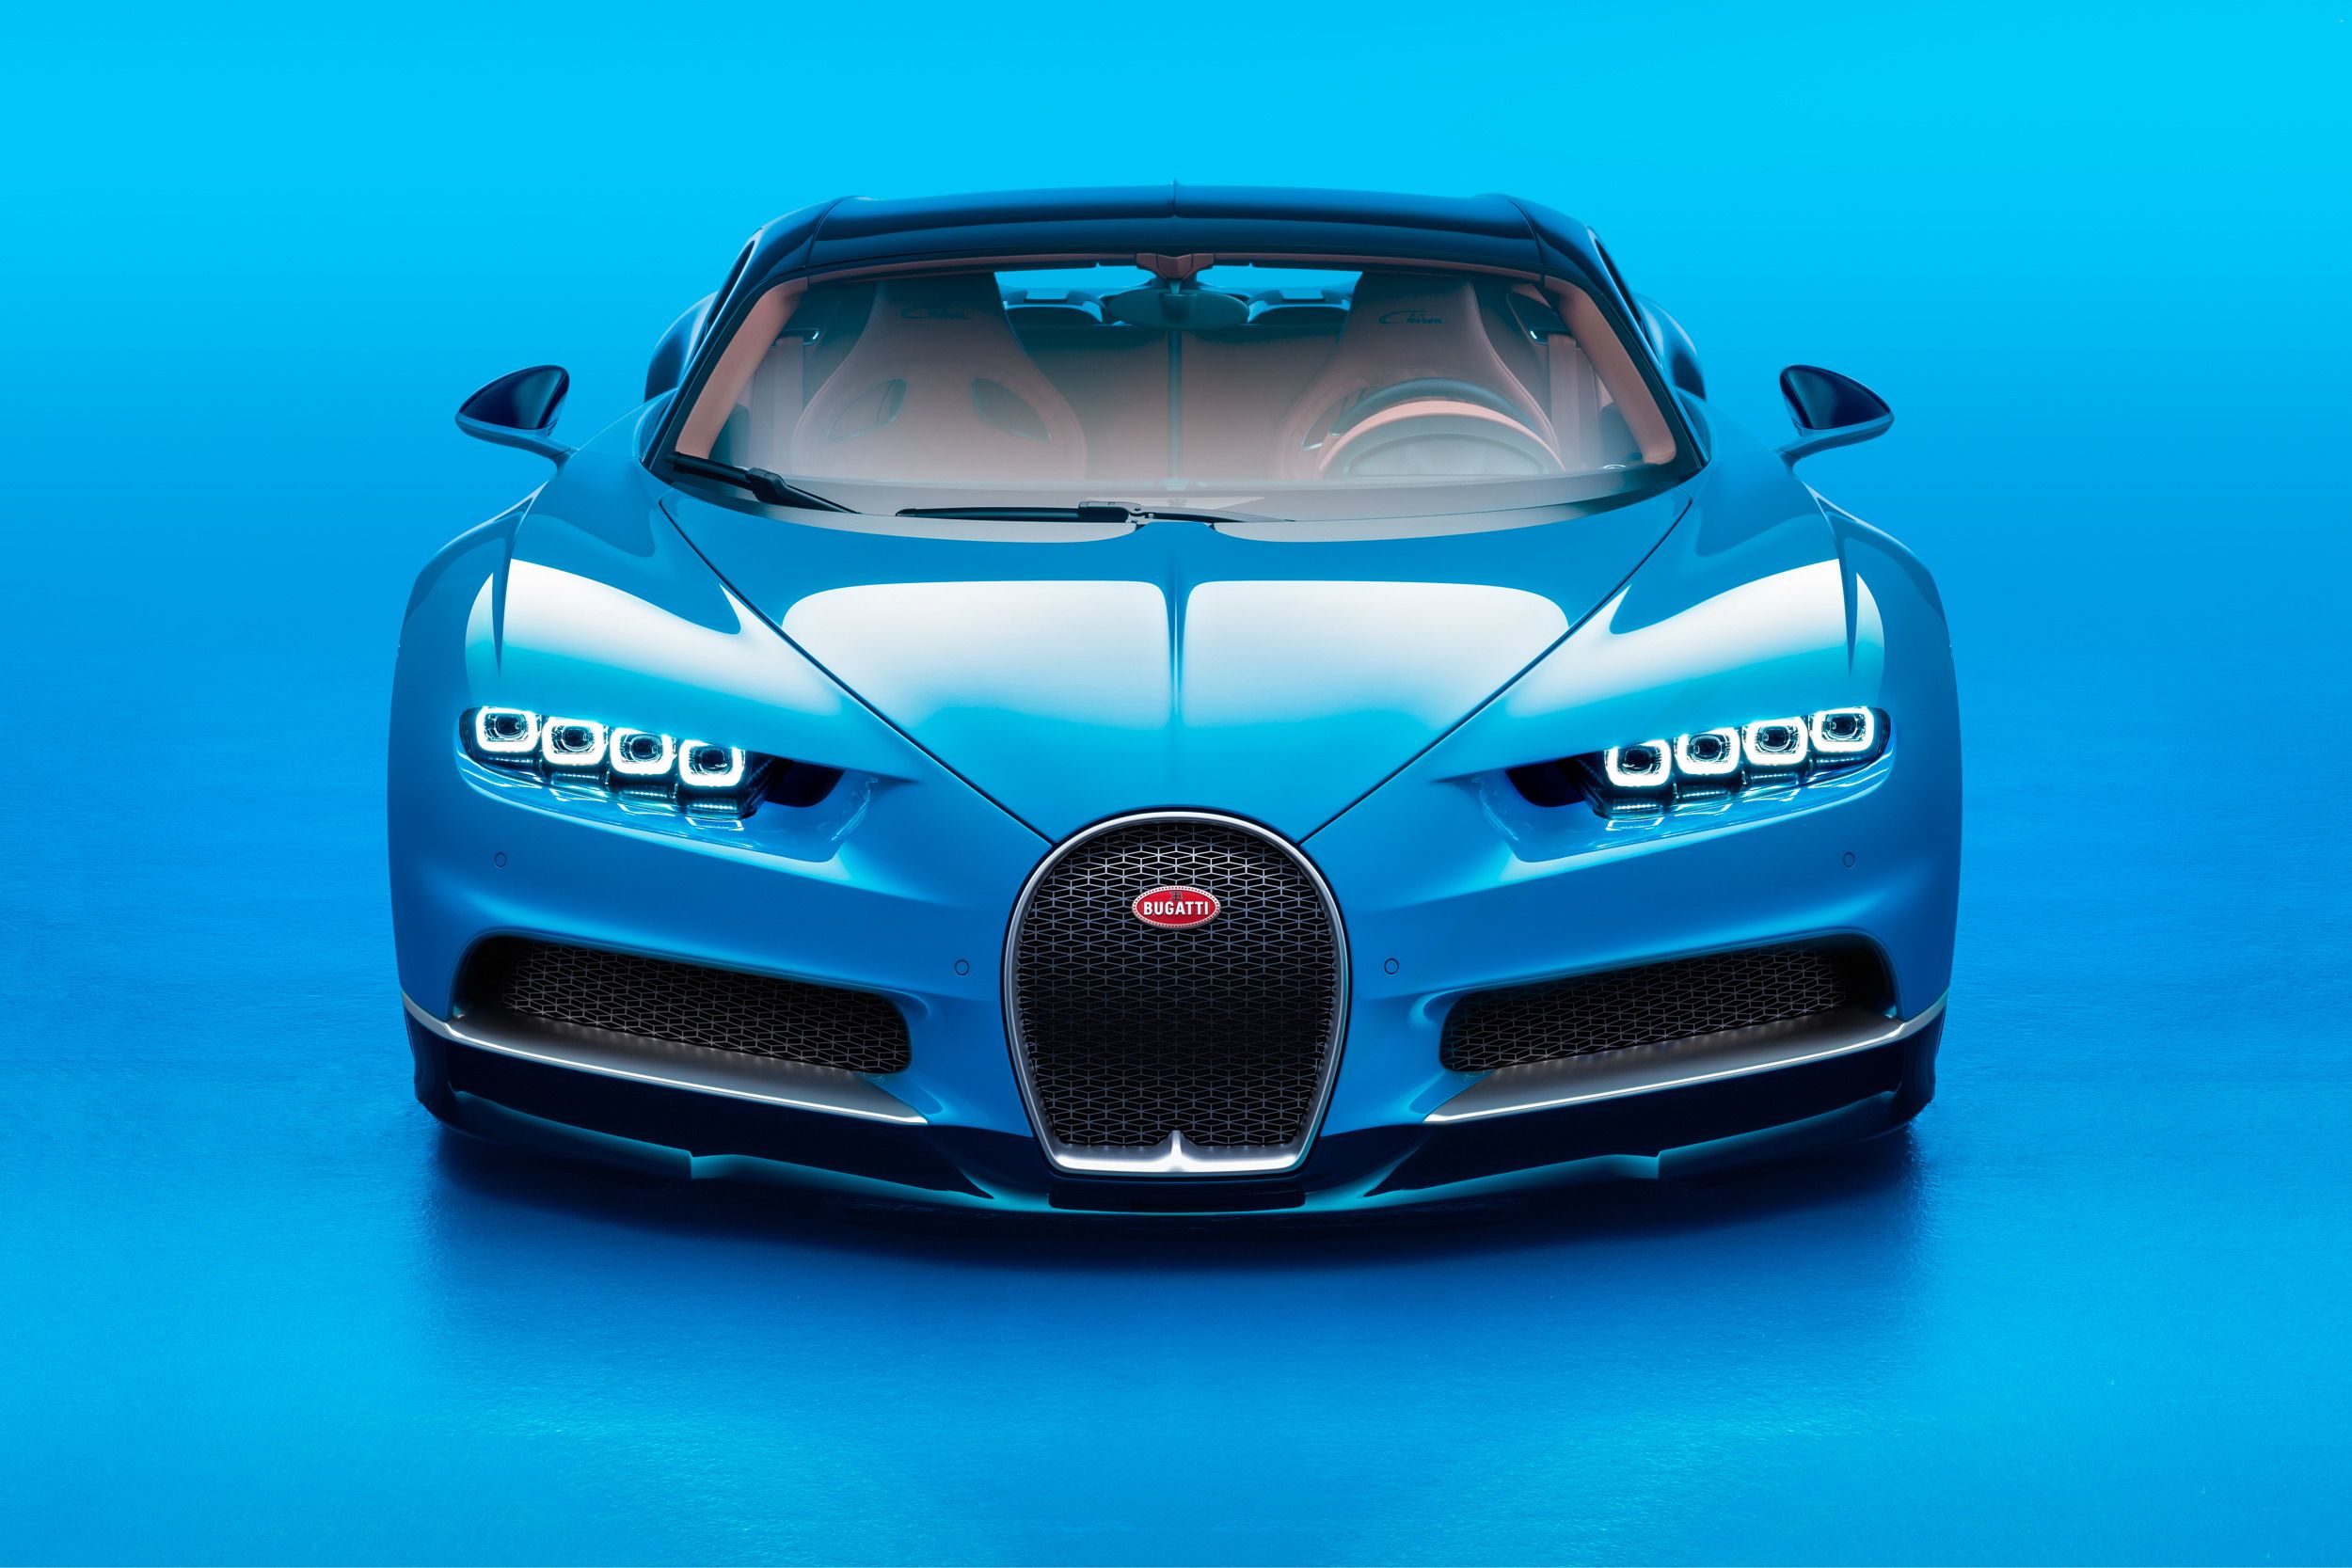 2018 Bugatti Chiron